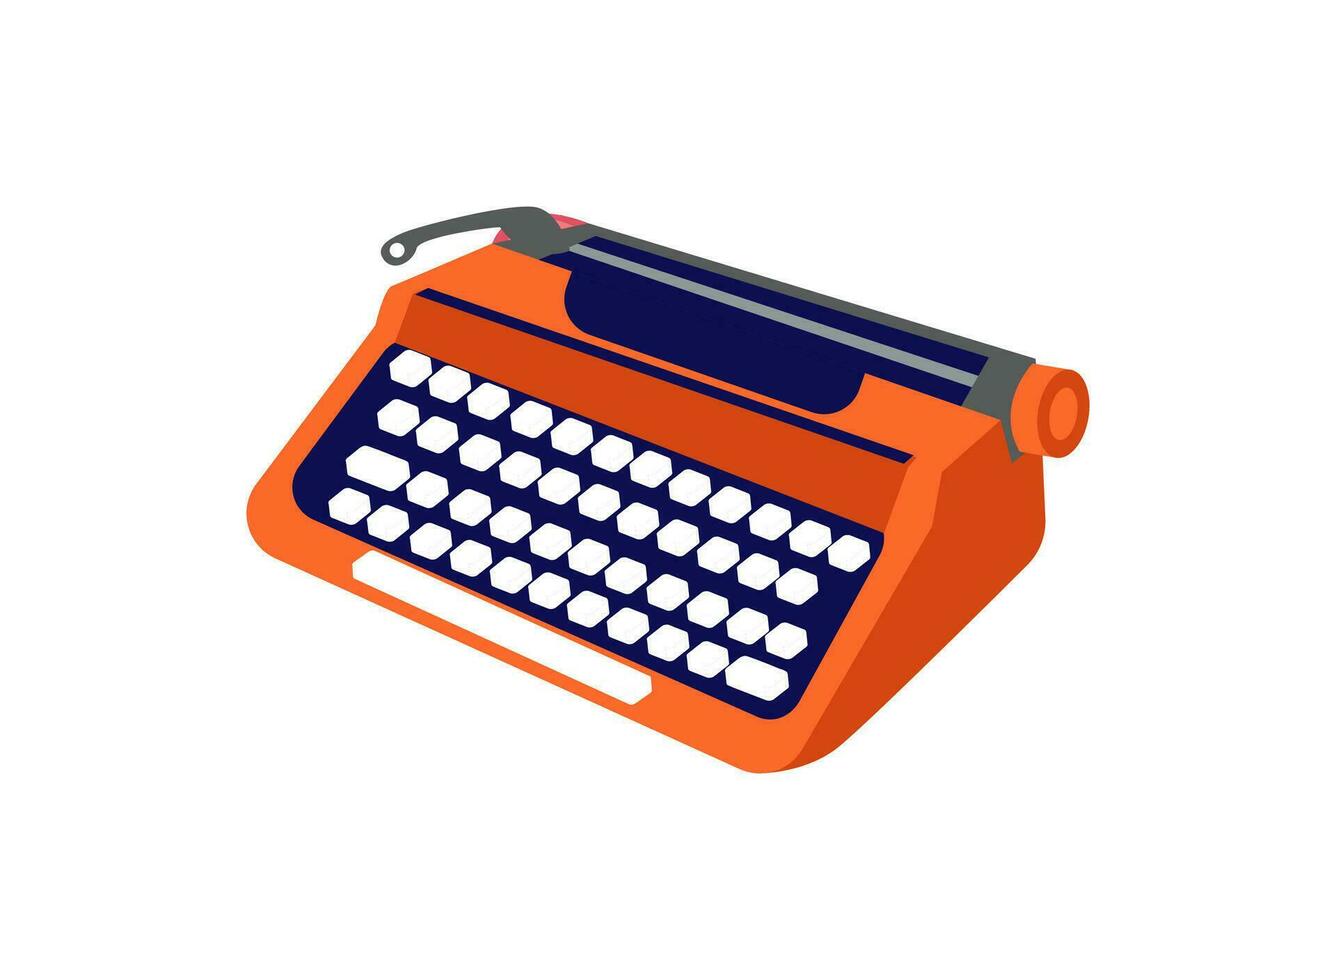 schrijfmachine hand- tekening vector illustratie. hoge kwaliteit premie kleurrijk wijnoogst retro oud schrijfmachine. schrijfmachine icoon met toetsen alfabet ontwerp.